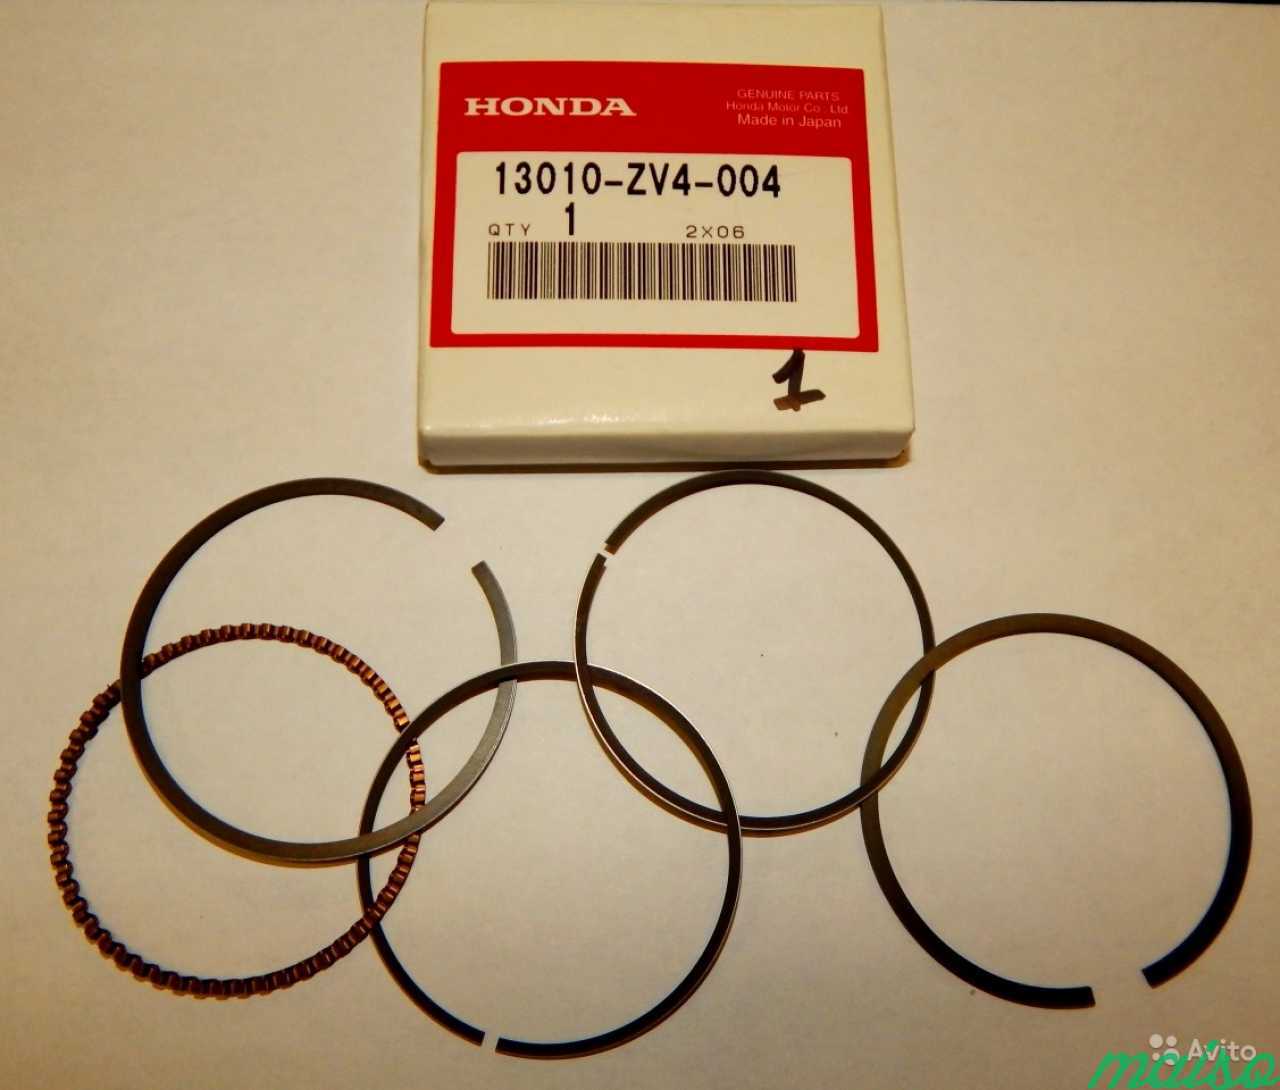 Поршневые кольца для двигателя Хонда сб 650. Кольца Хонда 13010-z6l-00 made in Japan. Поршневые кольца Хонда Аккорд 8 k24z3. Кольца поршневые Хонда Инспаер. Кольца поршневые honda